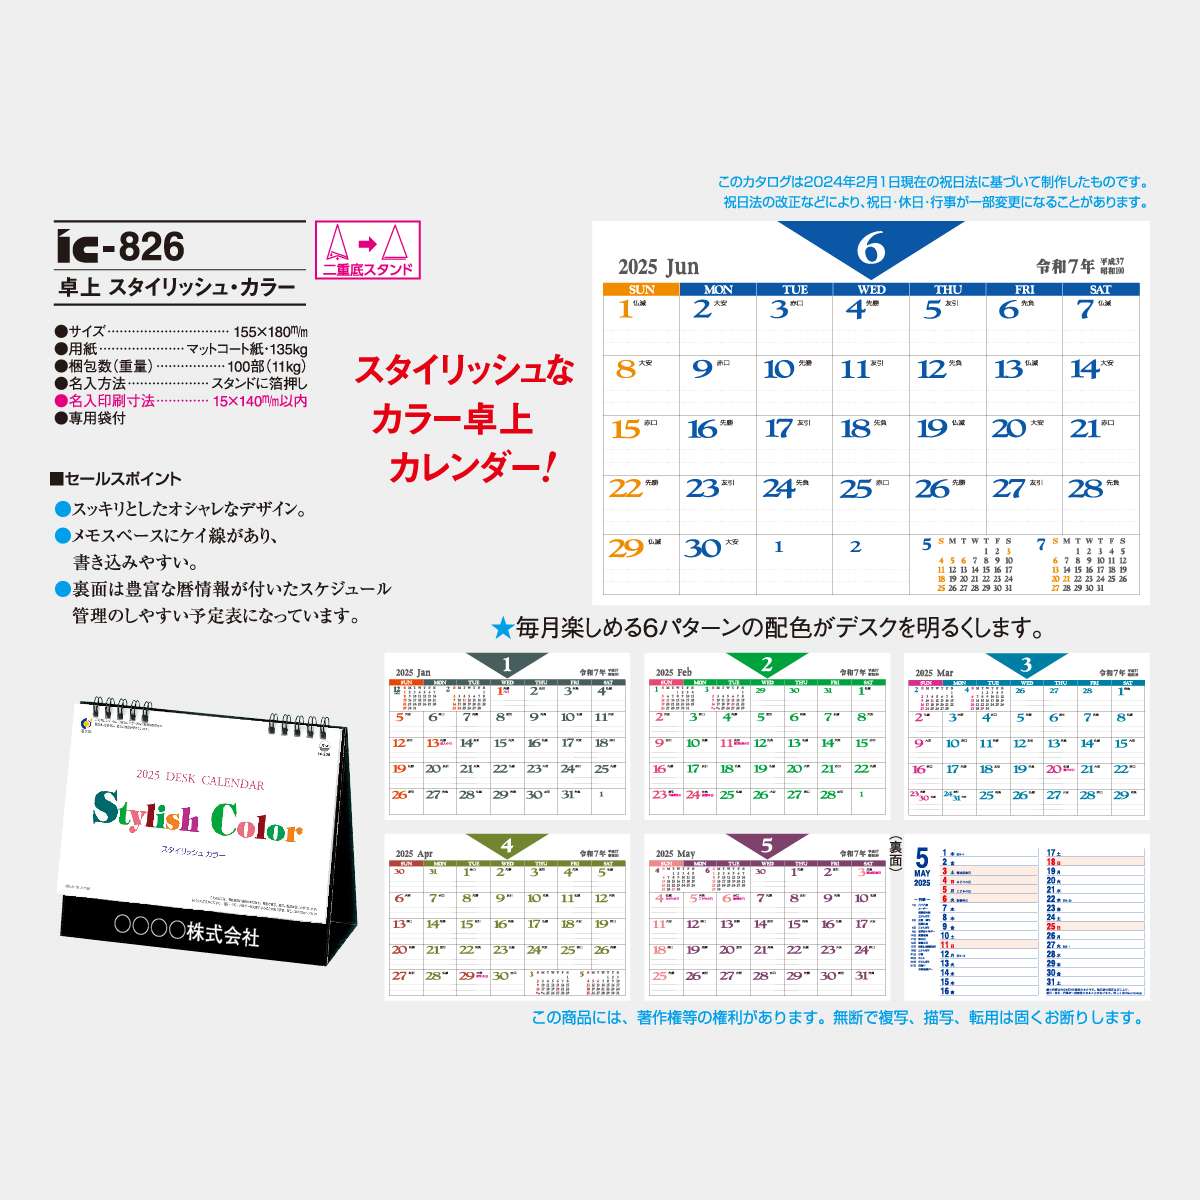 Ic 6 スタイリッシュ カラー 23年版の名入れカレンダーを格安で販売 名入れカレンダー印刷 Com